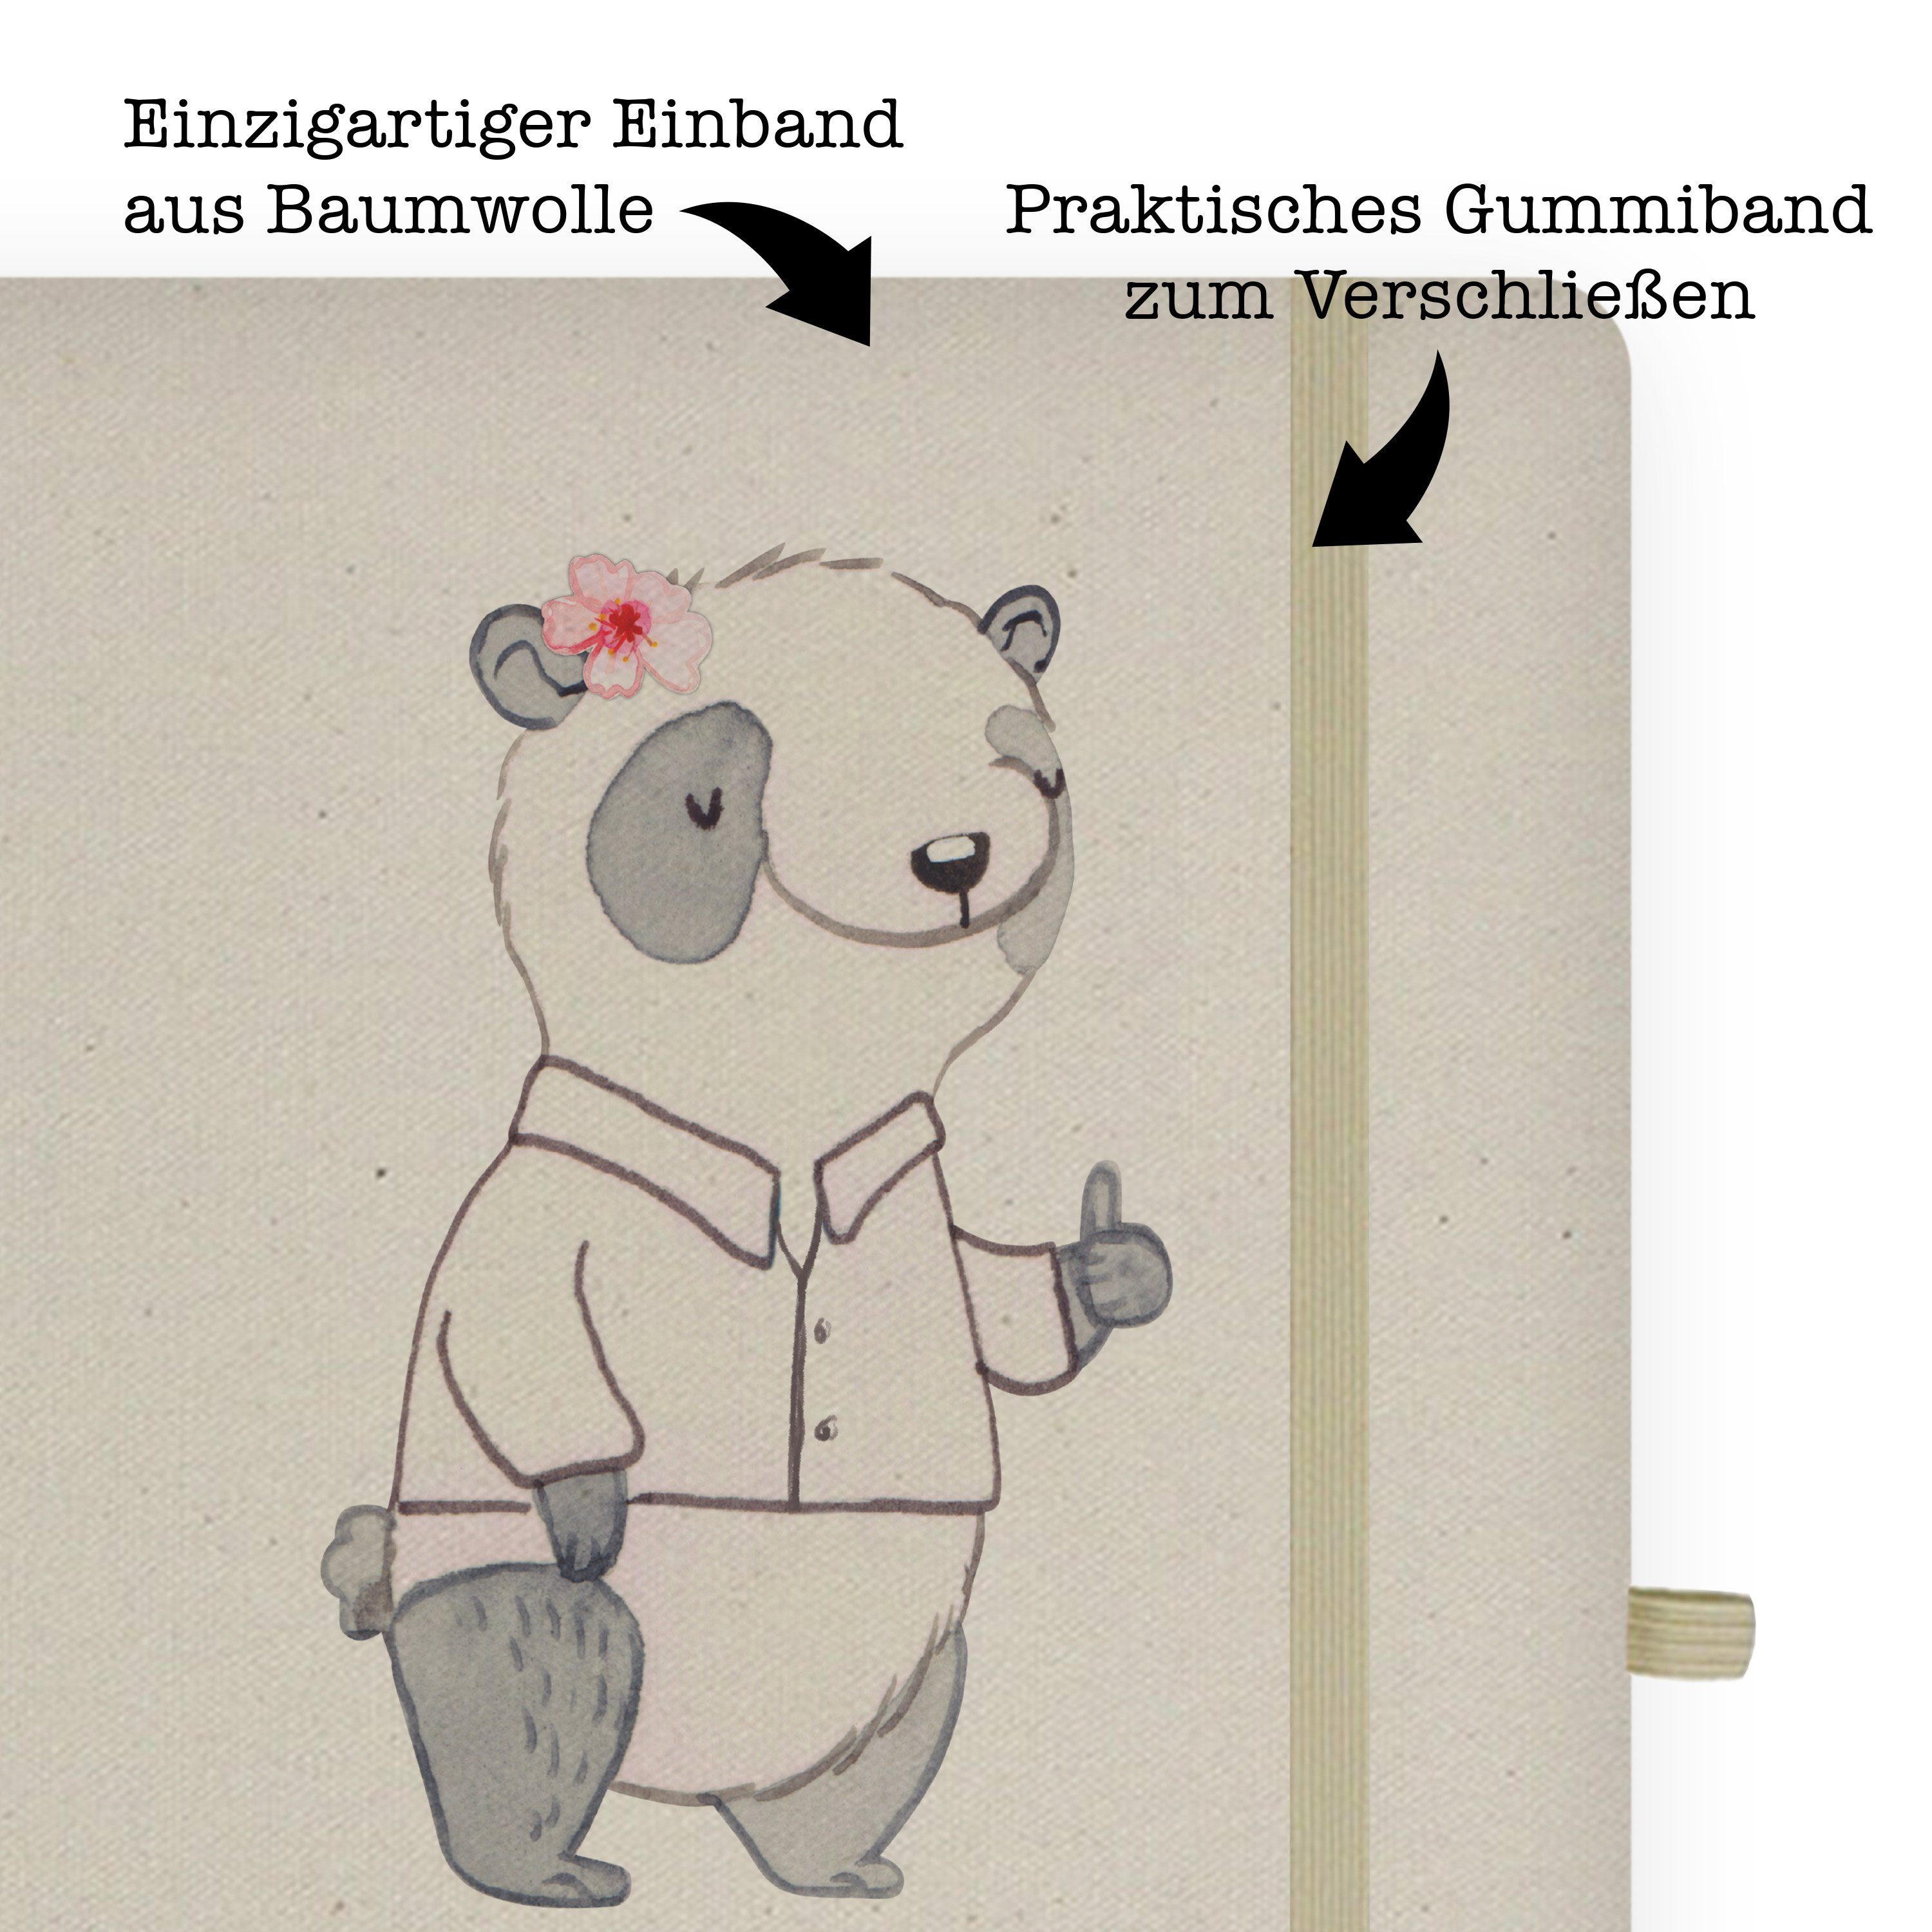 Notizbuch Mrs. & mit Panda - Kommunikationsmanagerin Mr. - Mrs. Transparent Herz Panda Abschied, Mr. & Geschenk,